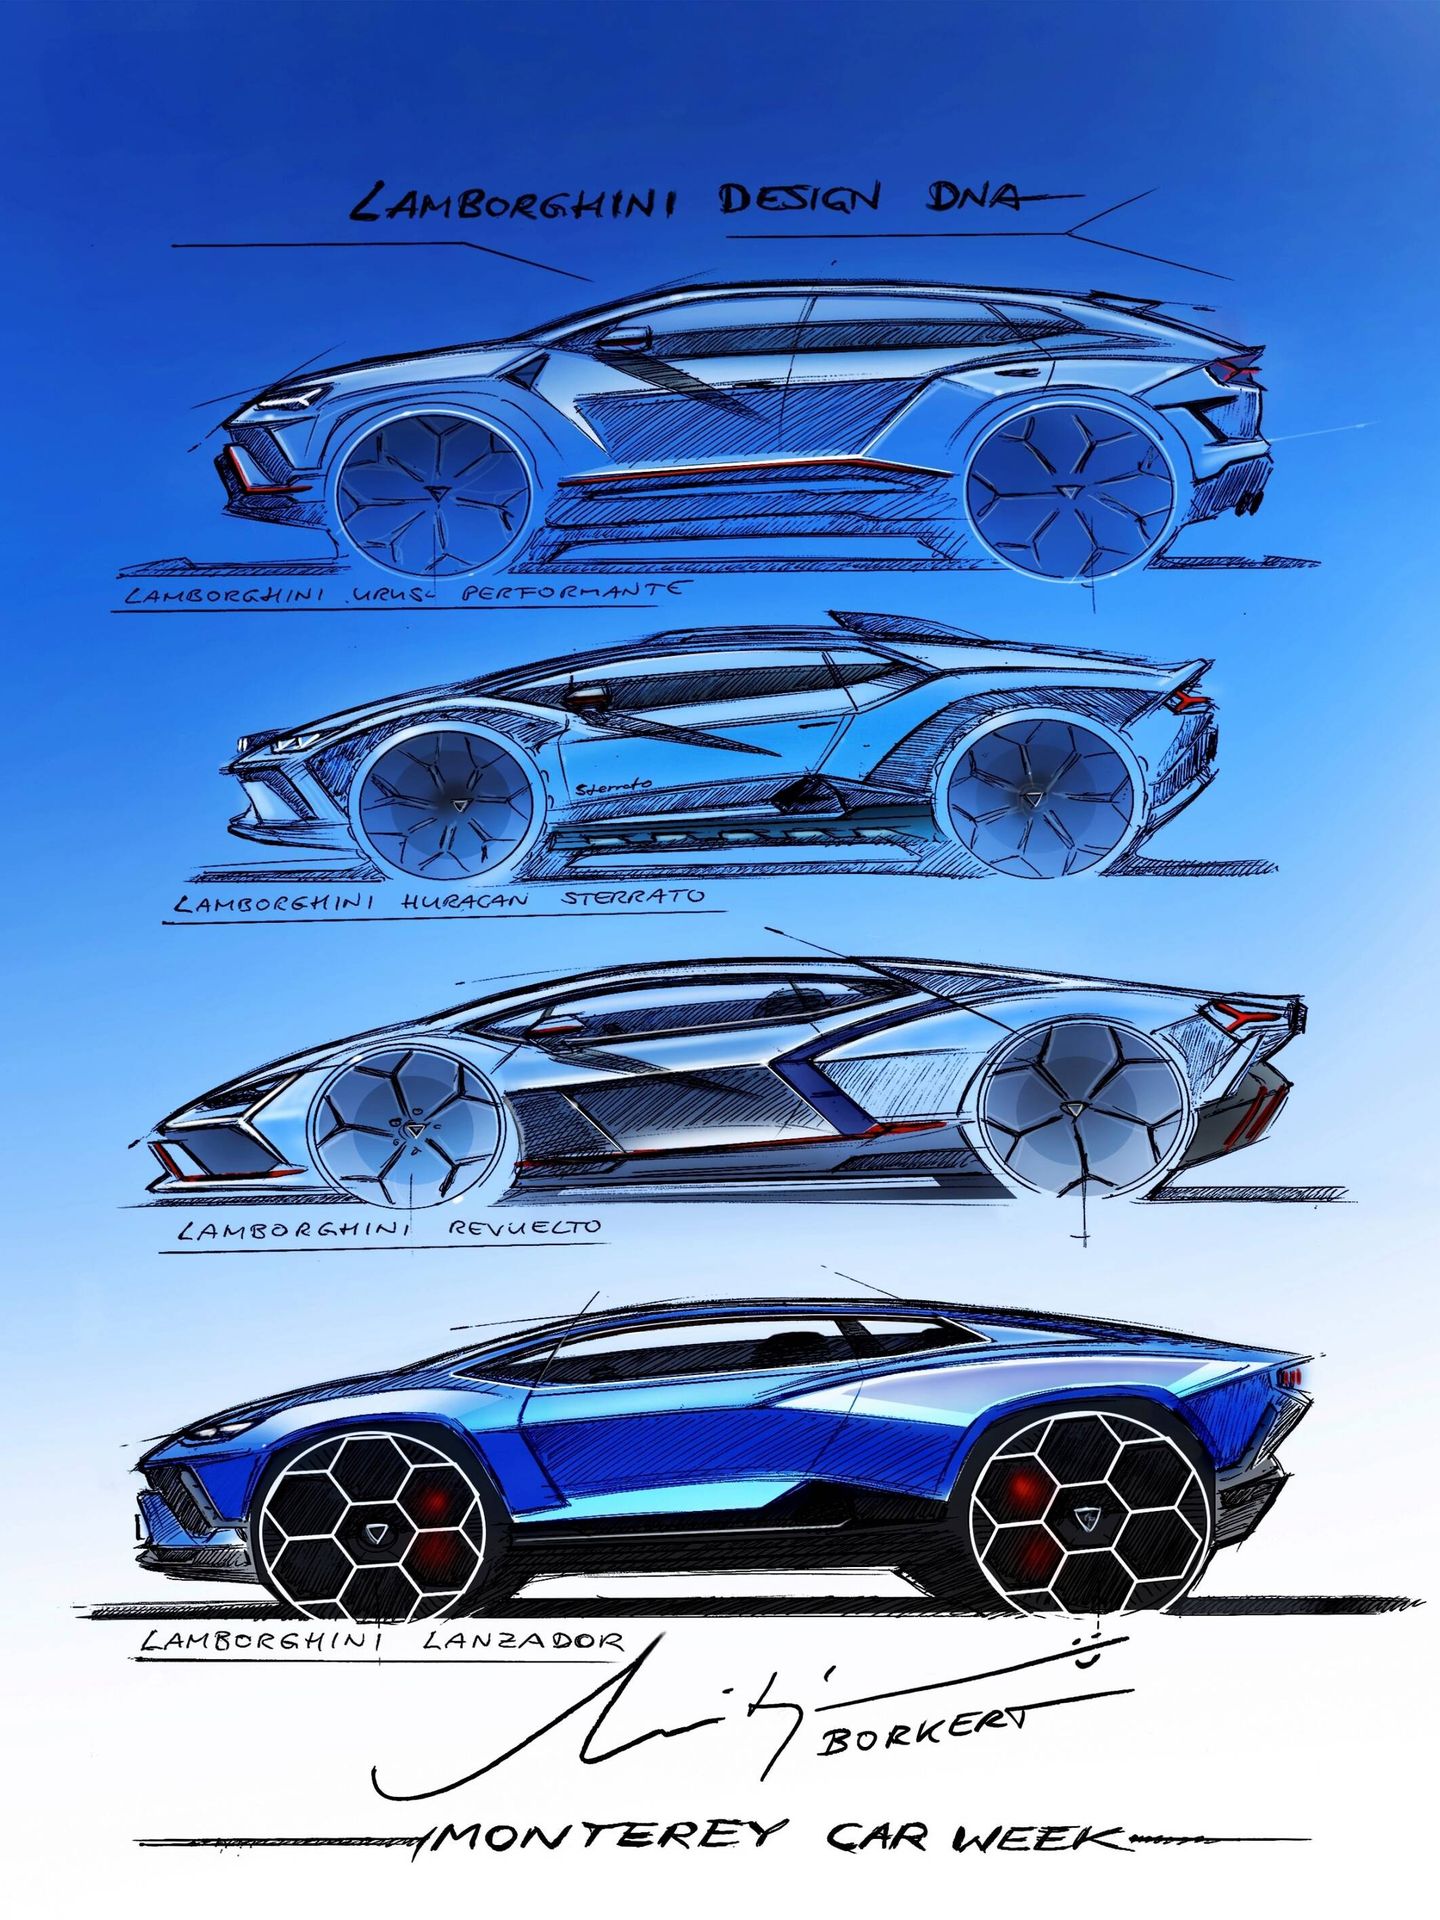 Bocetos comparativos de varios coches de Lamborghini: Urus, Huracan, Revuelto y Lanzador.